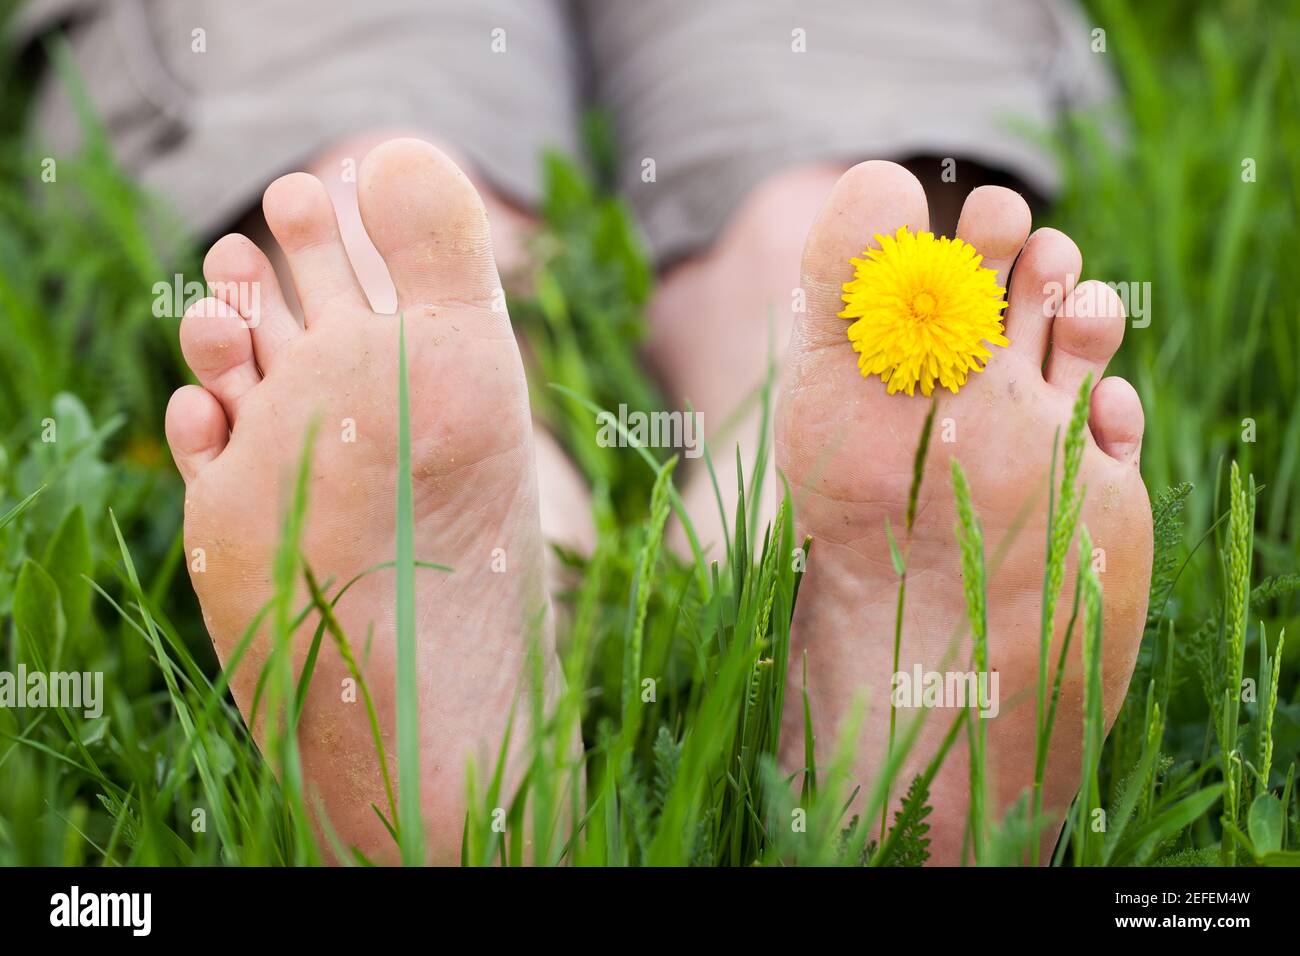 Acostado descalzo en la hierba alta Foto de stock